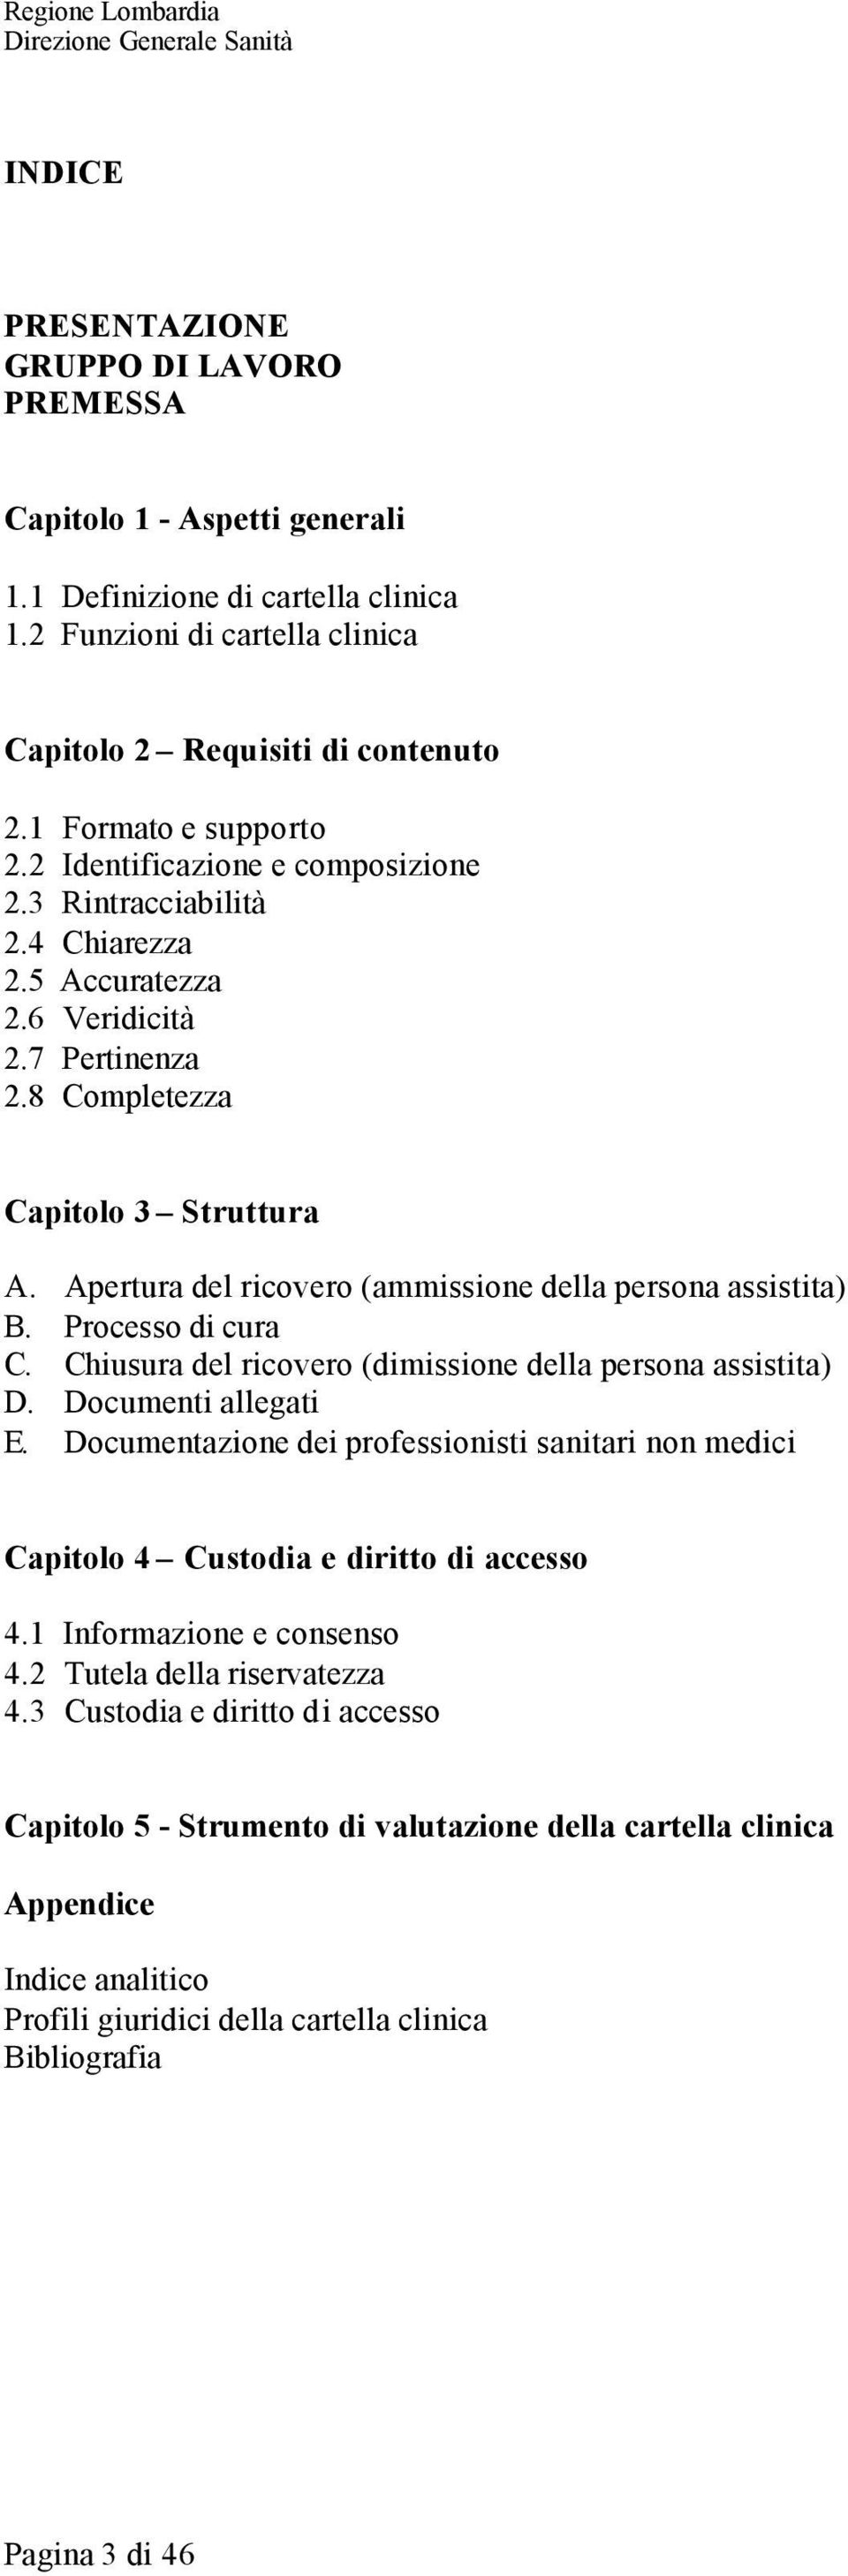 Apertura del ricovero (ammissione della persona assistita) B. Processo di cura C. Chiusura del ricovero (dimissione della persona assistita) D. Documenti allegati E.